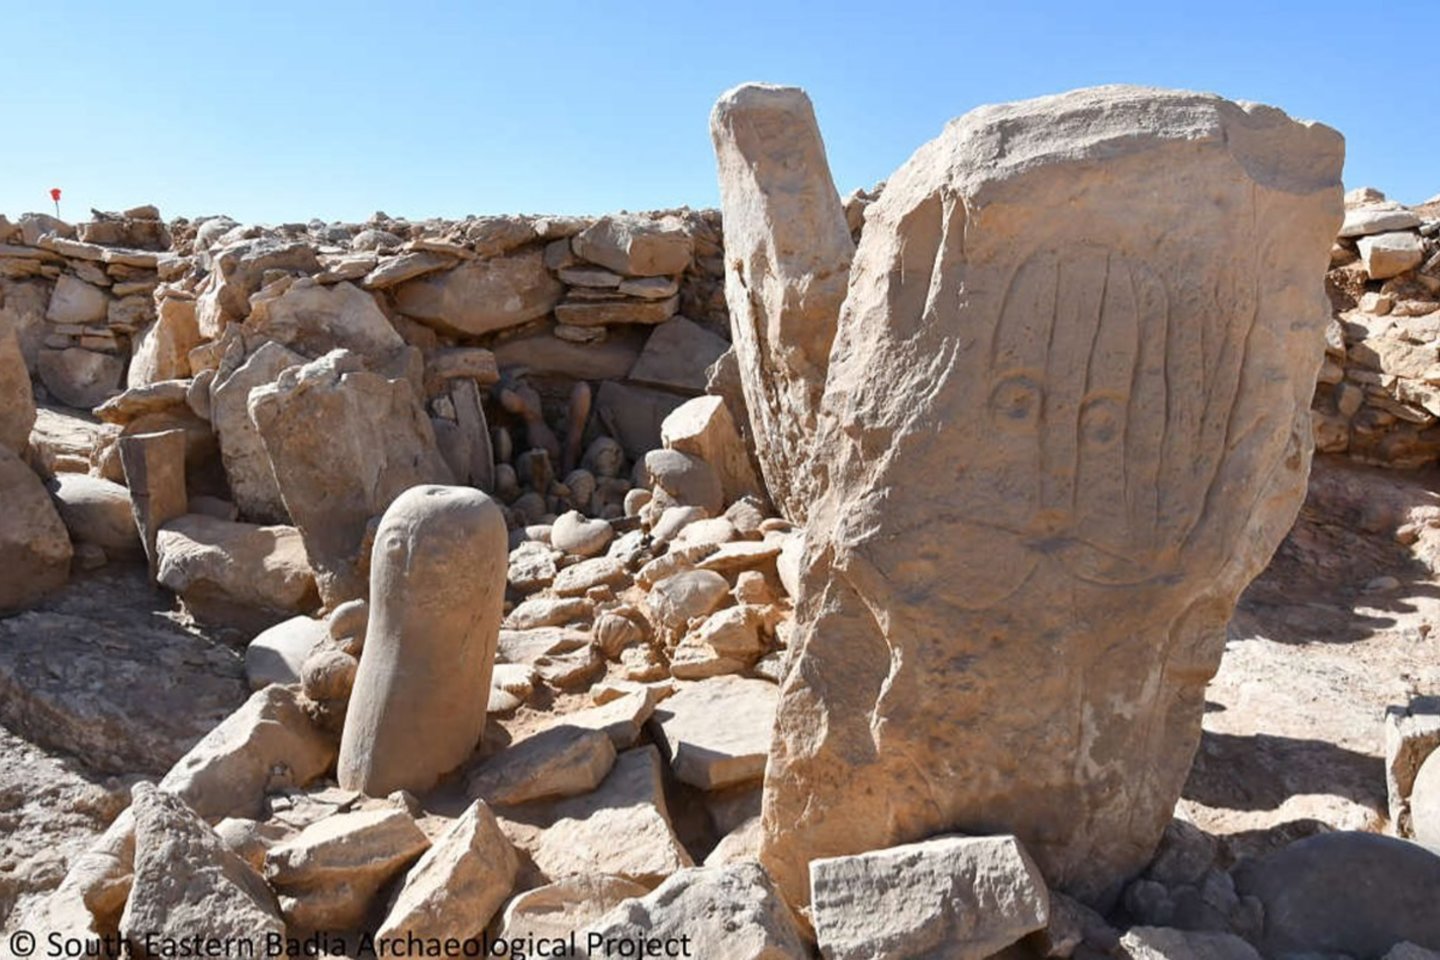  Jordanijos dykumoje vykdydami kasinėjimus archeologai aptiko neolito (naujojo akmens amžiaus) šventyklą, datuojamą maždaug 9000 metų.<br>Pietryčių  Badijos Archeologijos projekto nuotr.